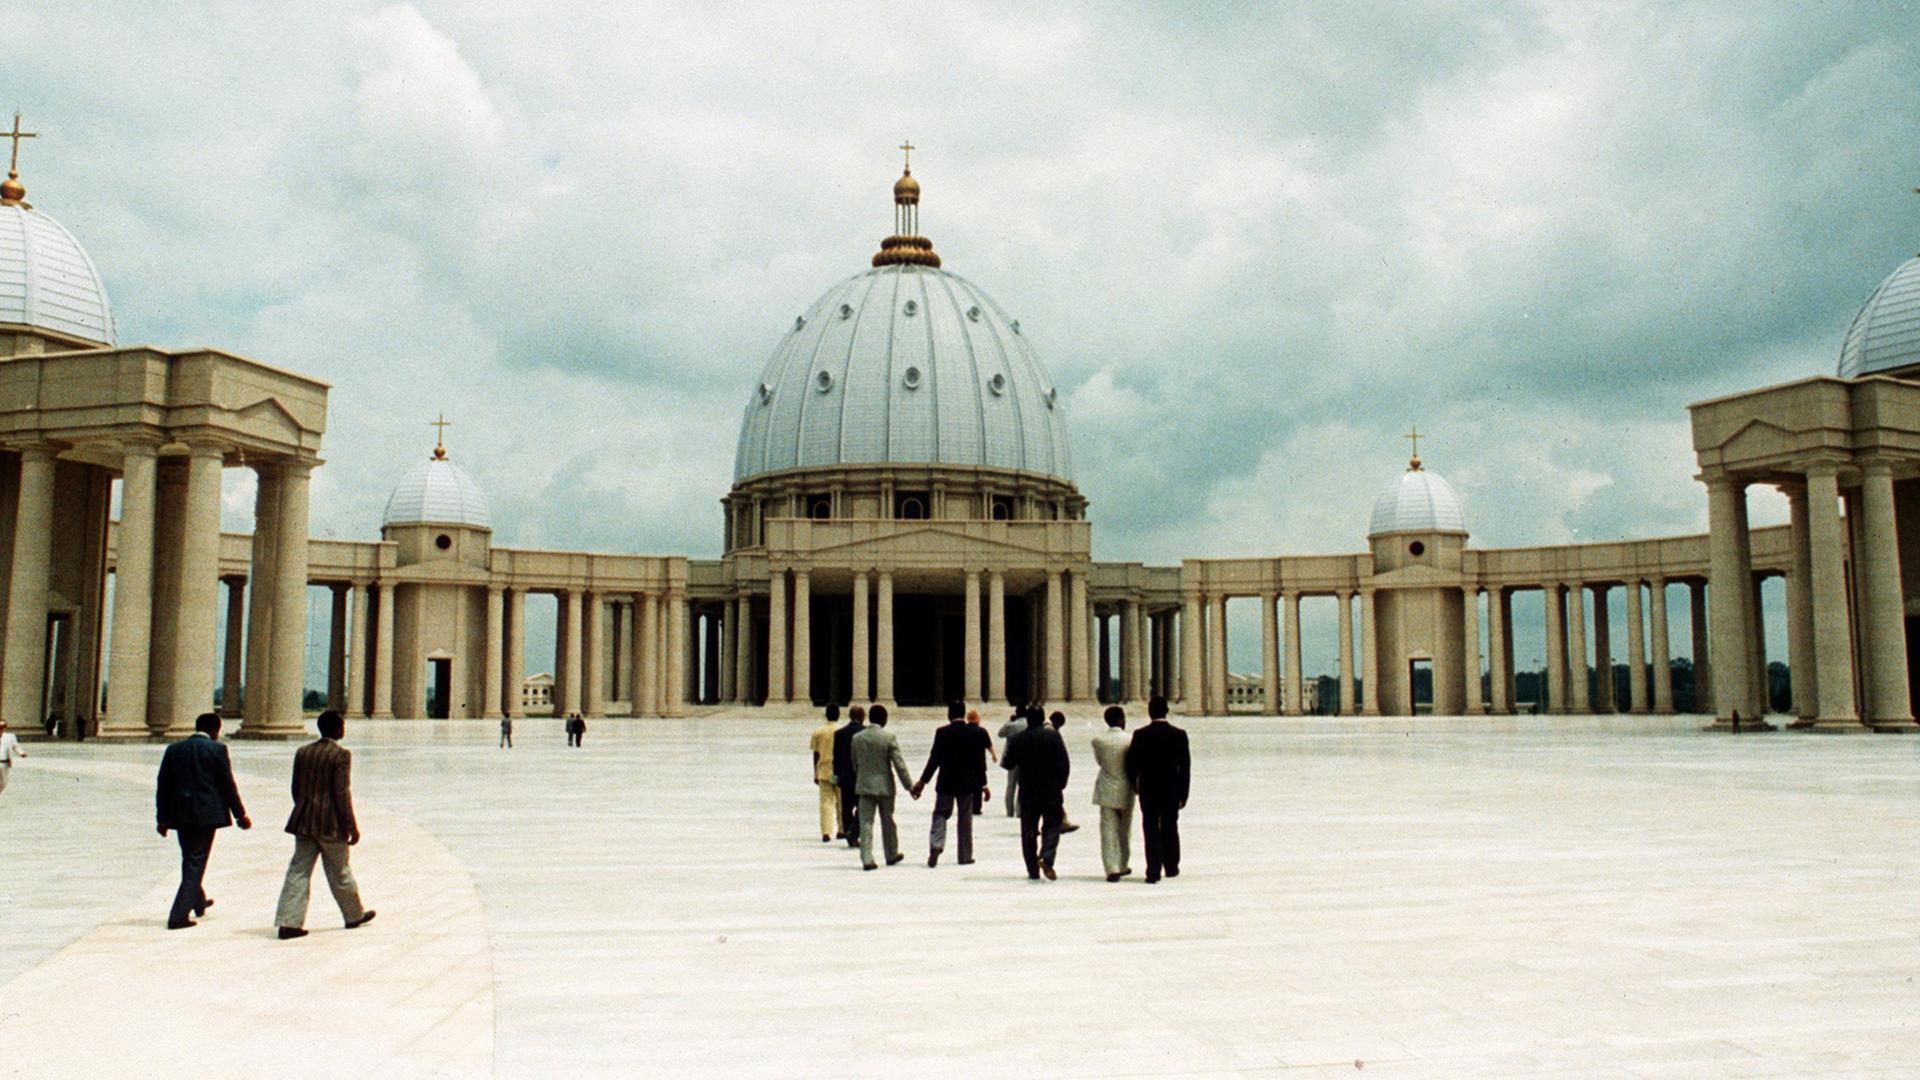 Die Kathedrale "Unserer Lieben Frau des Friedens" in Yamoussoukro an der Elfenbeinküste